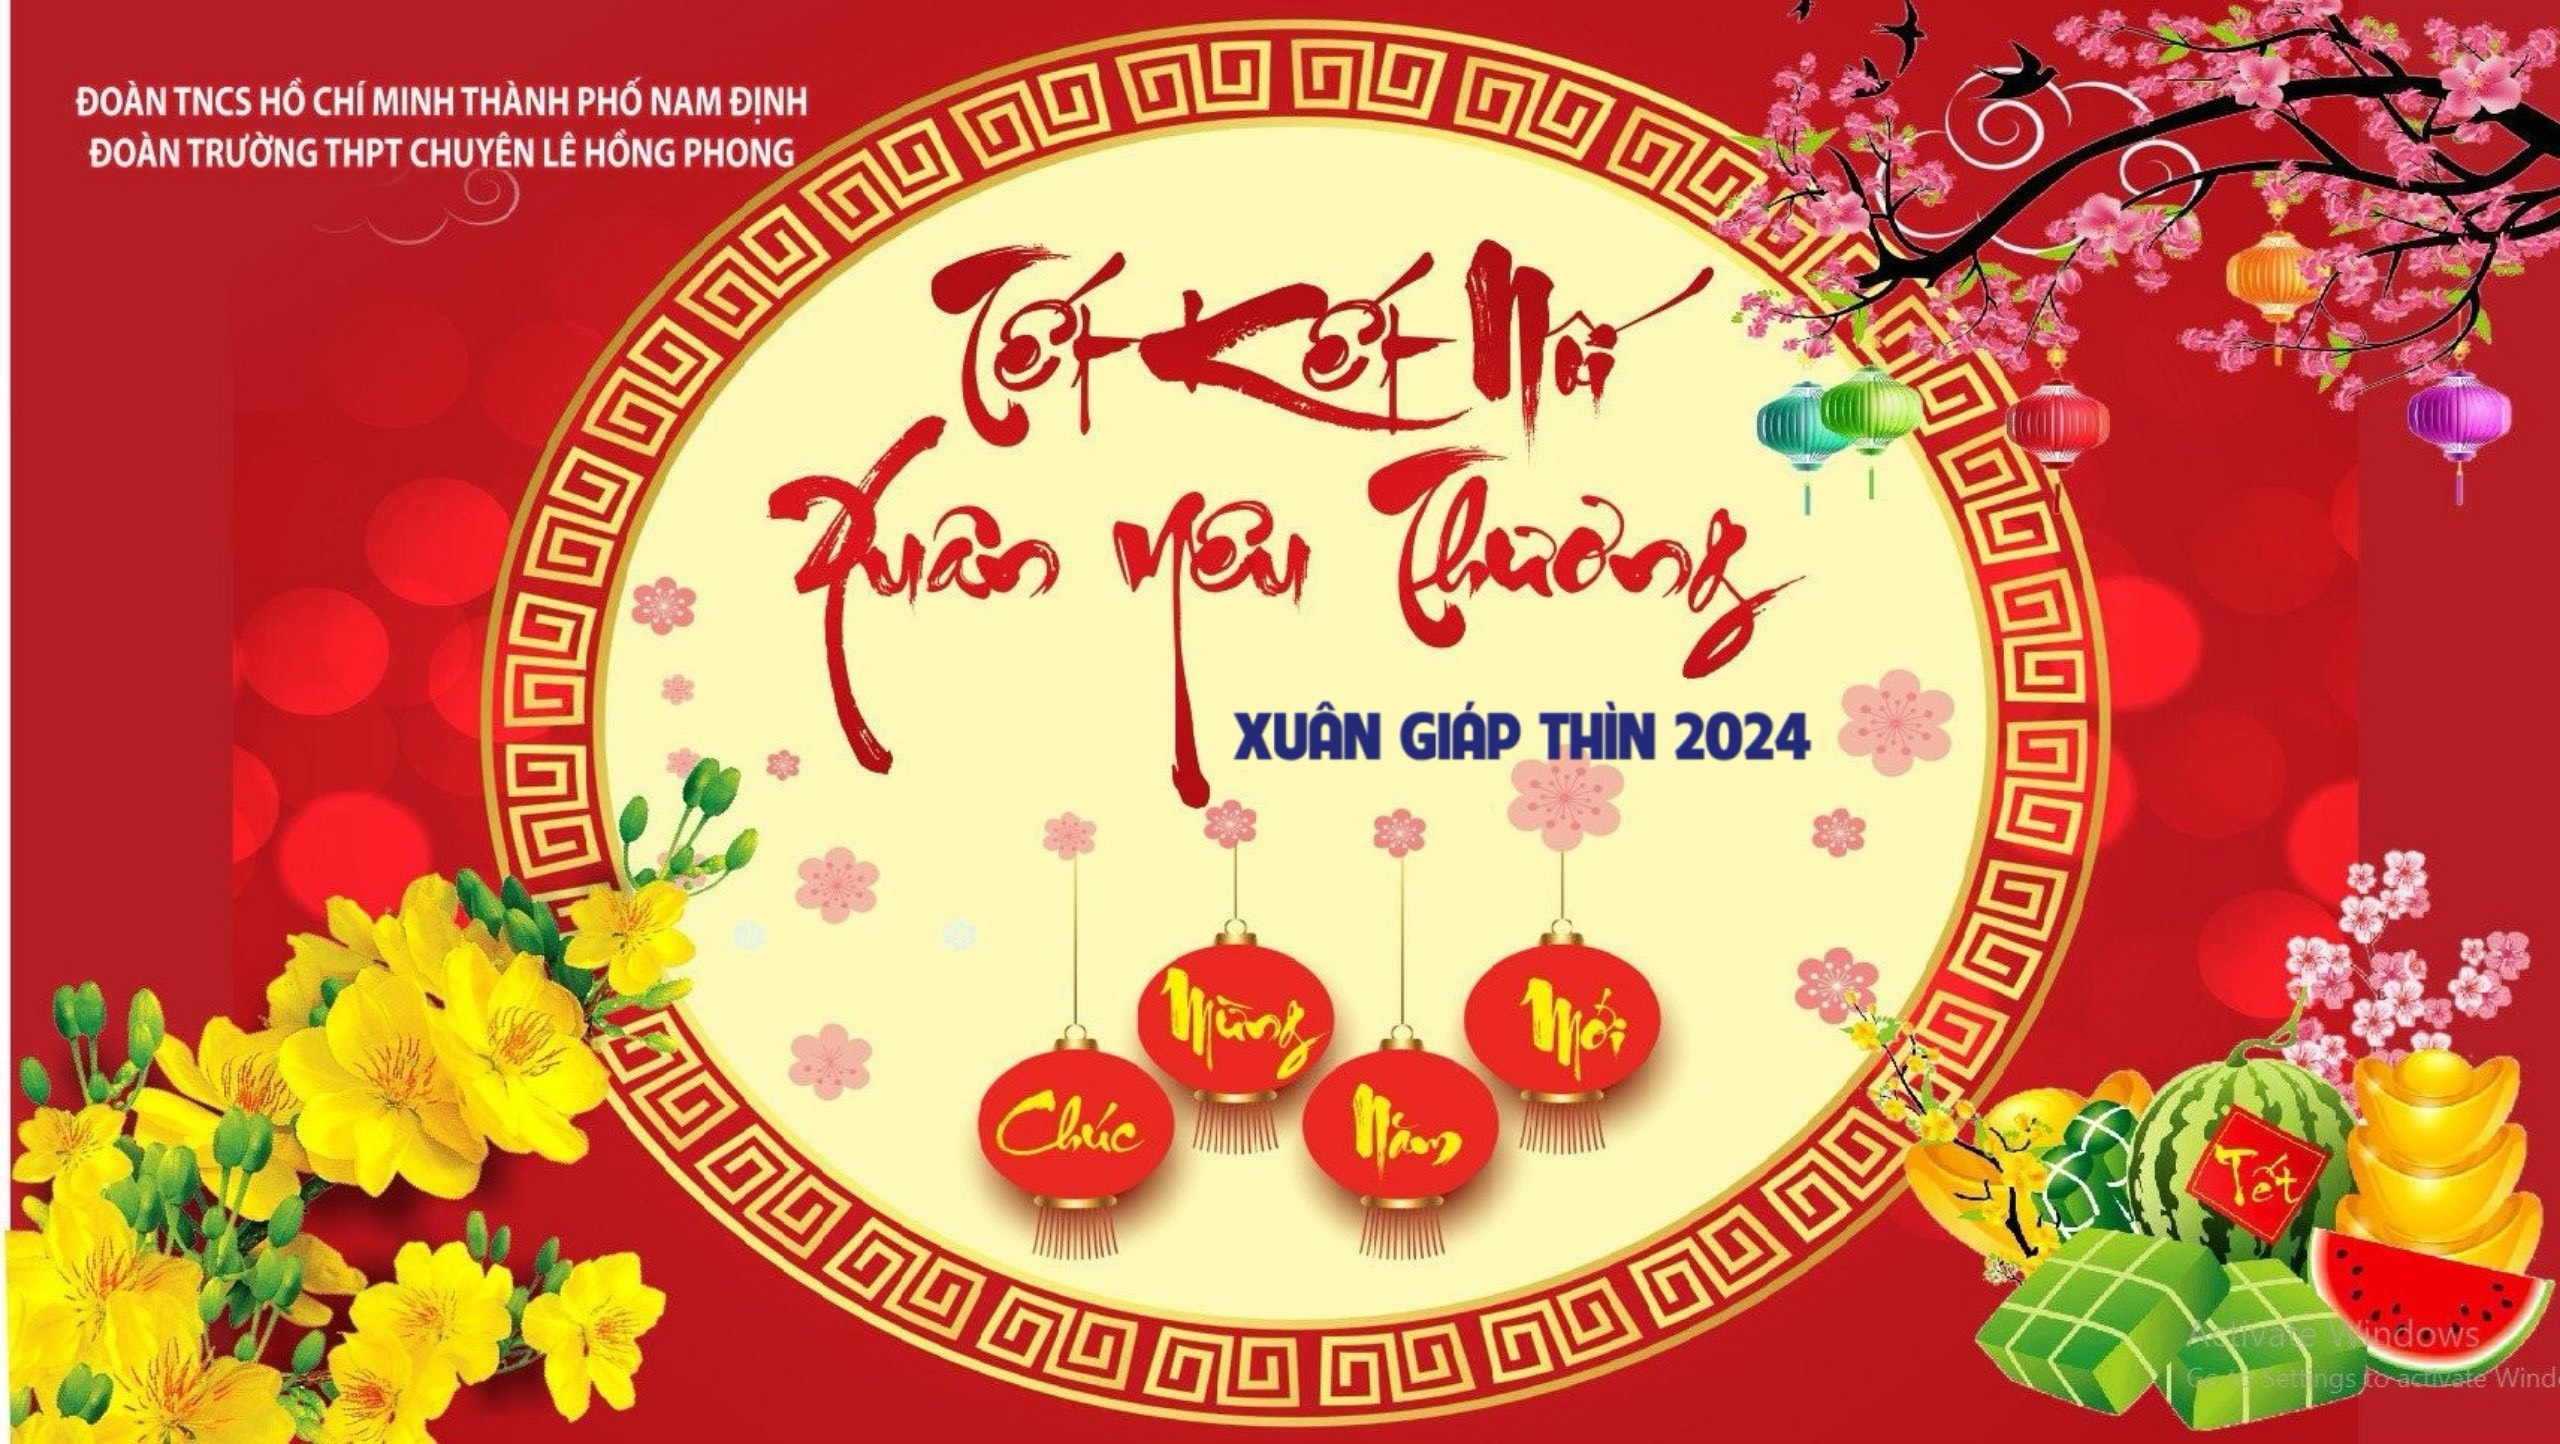 Trường THPT chuyên Lê Hồng Phong tổ chức chương trình Trải nghiệm Tết cổ truyền chào đón Xuân Giáp Thìn 2024 với chủ đề “Tết Kết Nối – Xuân Yêu Thương”.